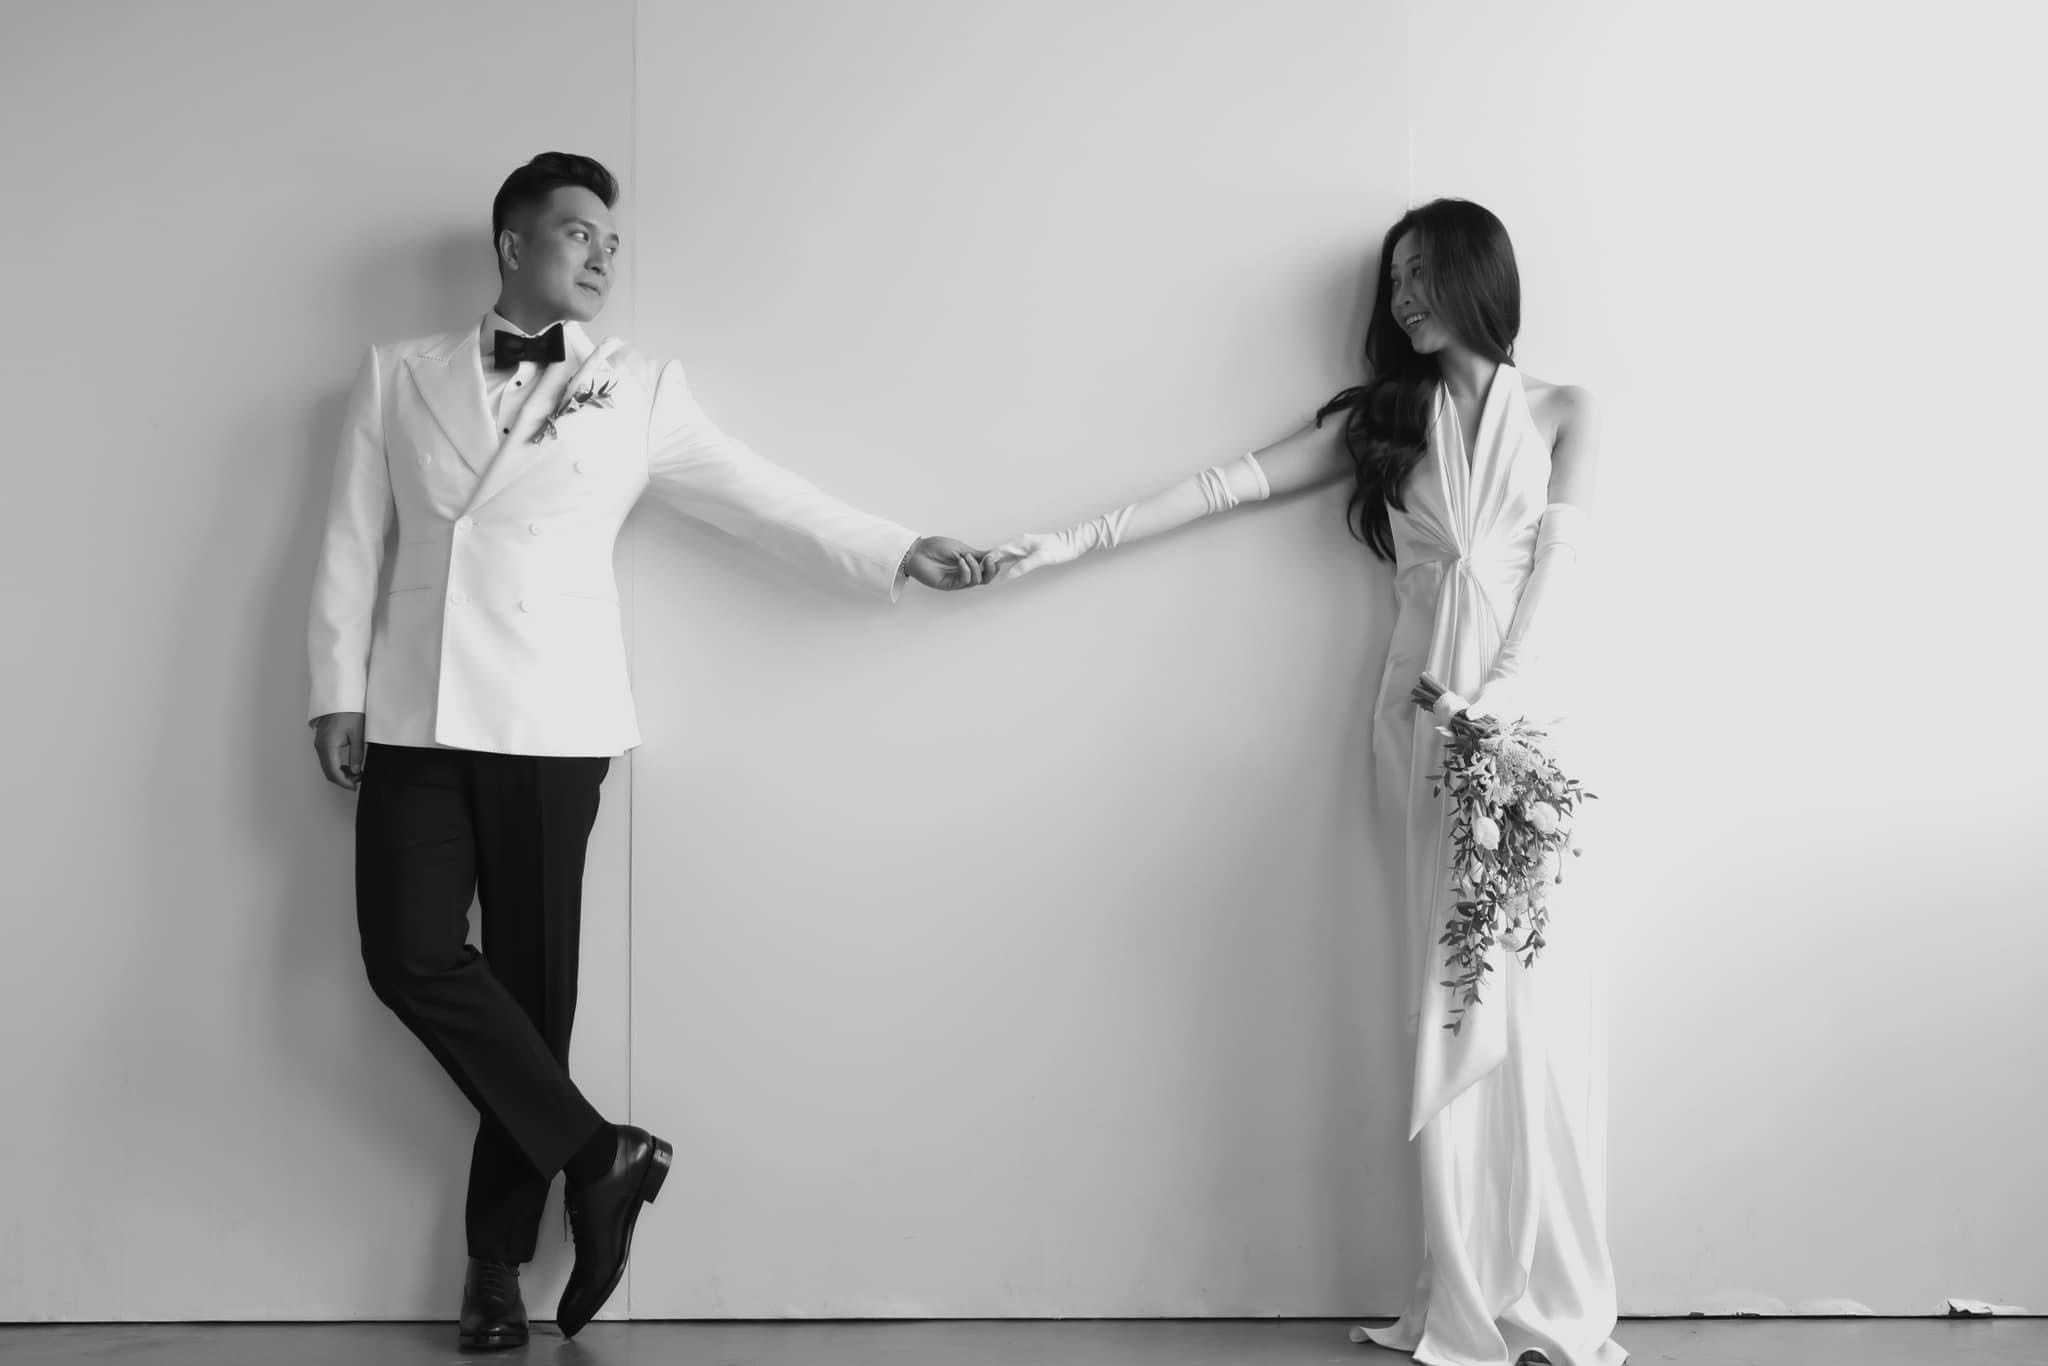 Nếu bạn đang tìm kiếm phong cách và sự tối giản, chụp ảnh cưới trắng đen là một sự lựa chọn tuyệt vời. Bức ảnh sẽ truyền tải được cảm xúc và chi tiết đến người xem một cách chân thật và tinh tế.